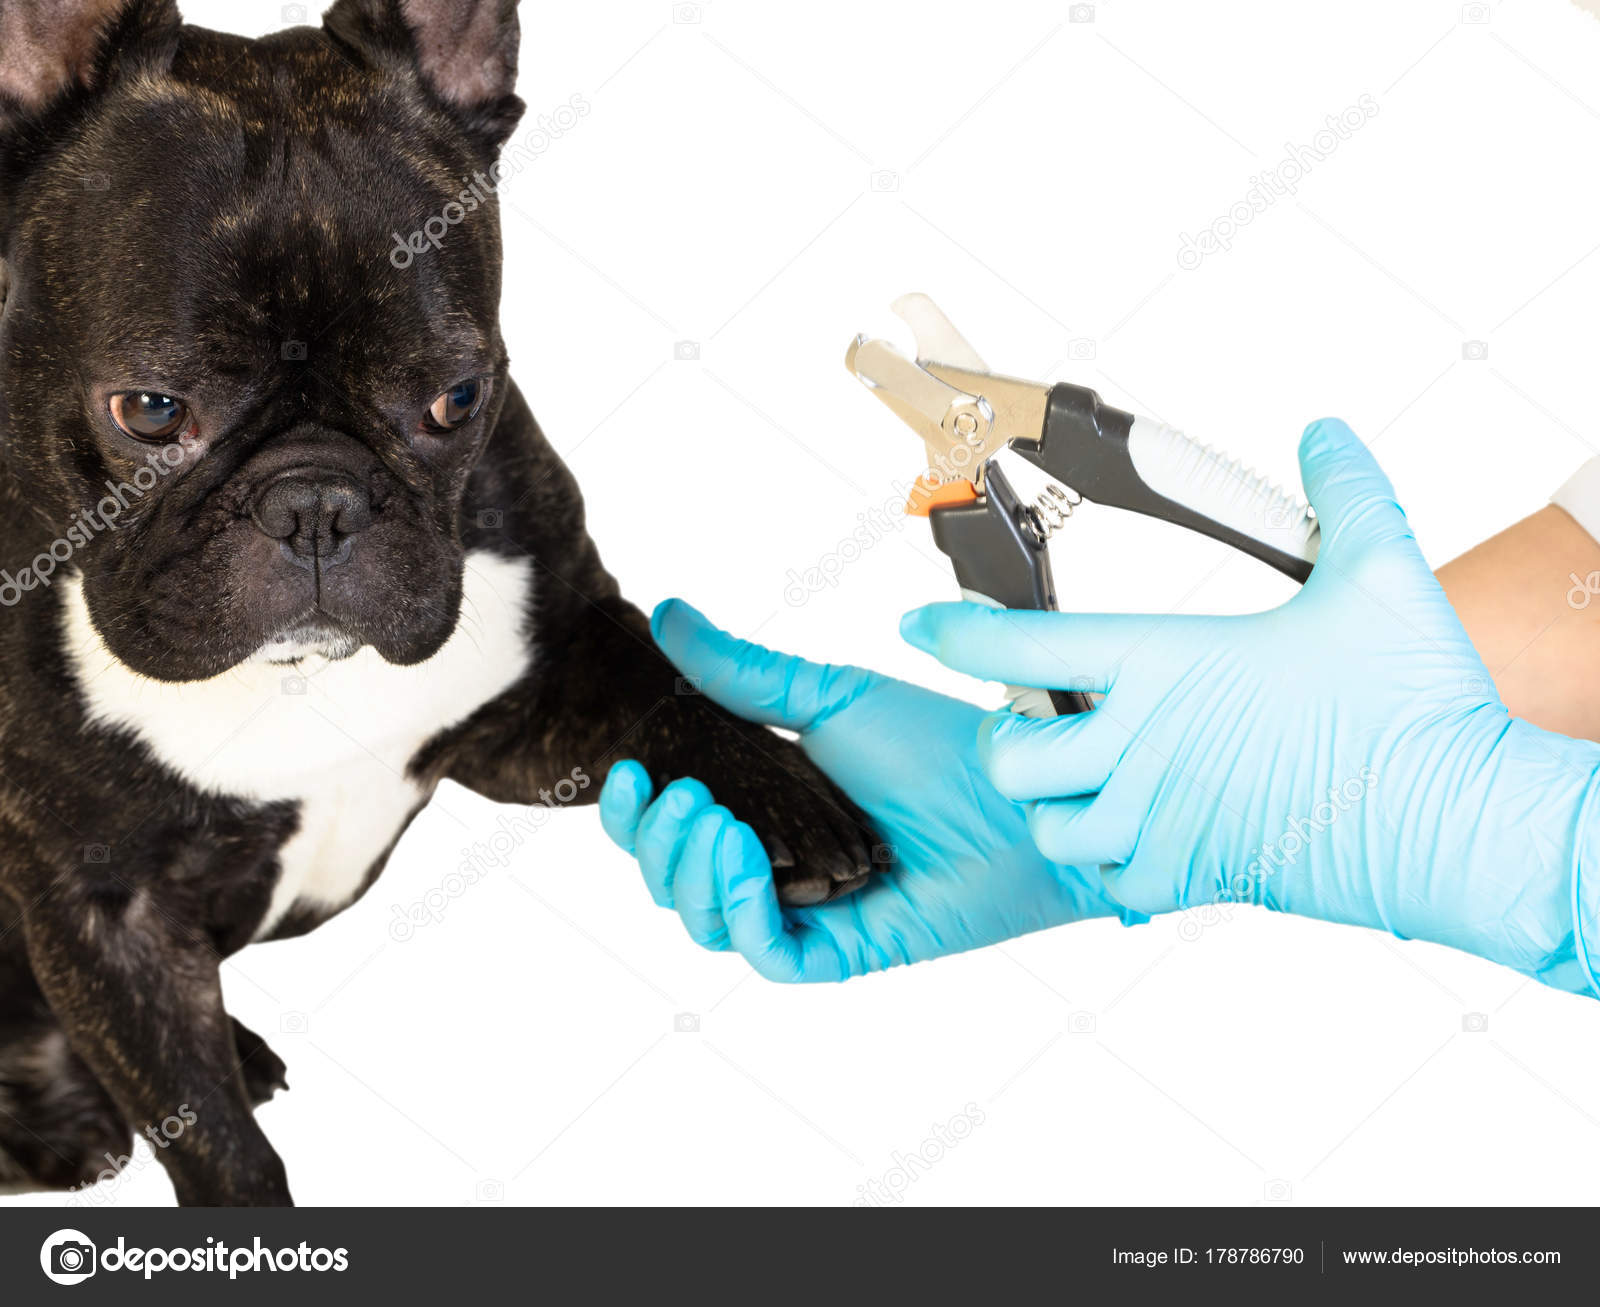 Dyrlæge skærer hundens kløer — Stock-foto © JamaL1977a #178786790